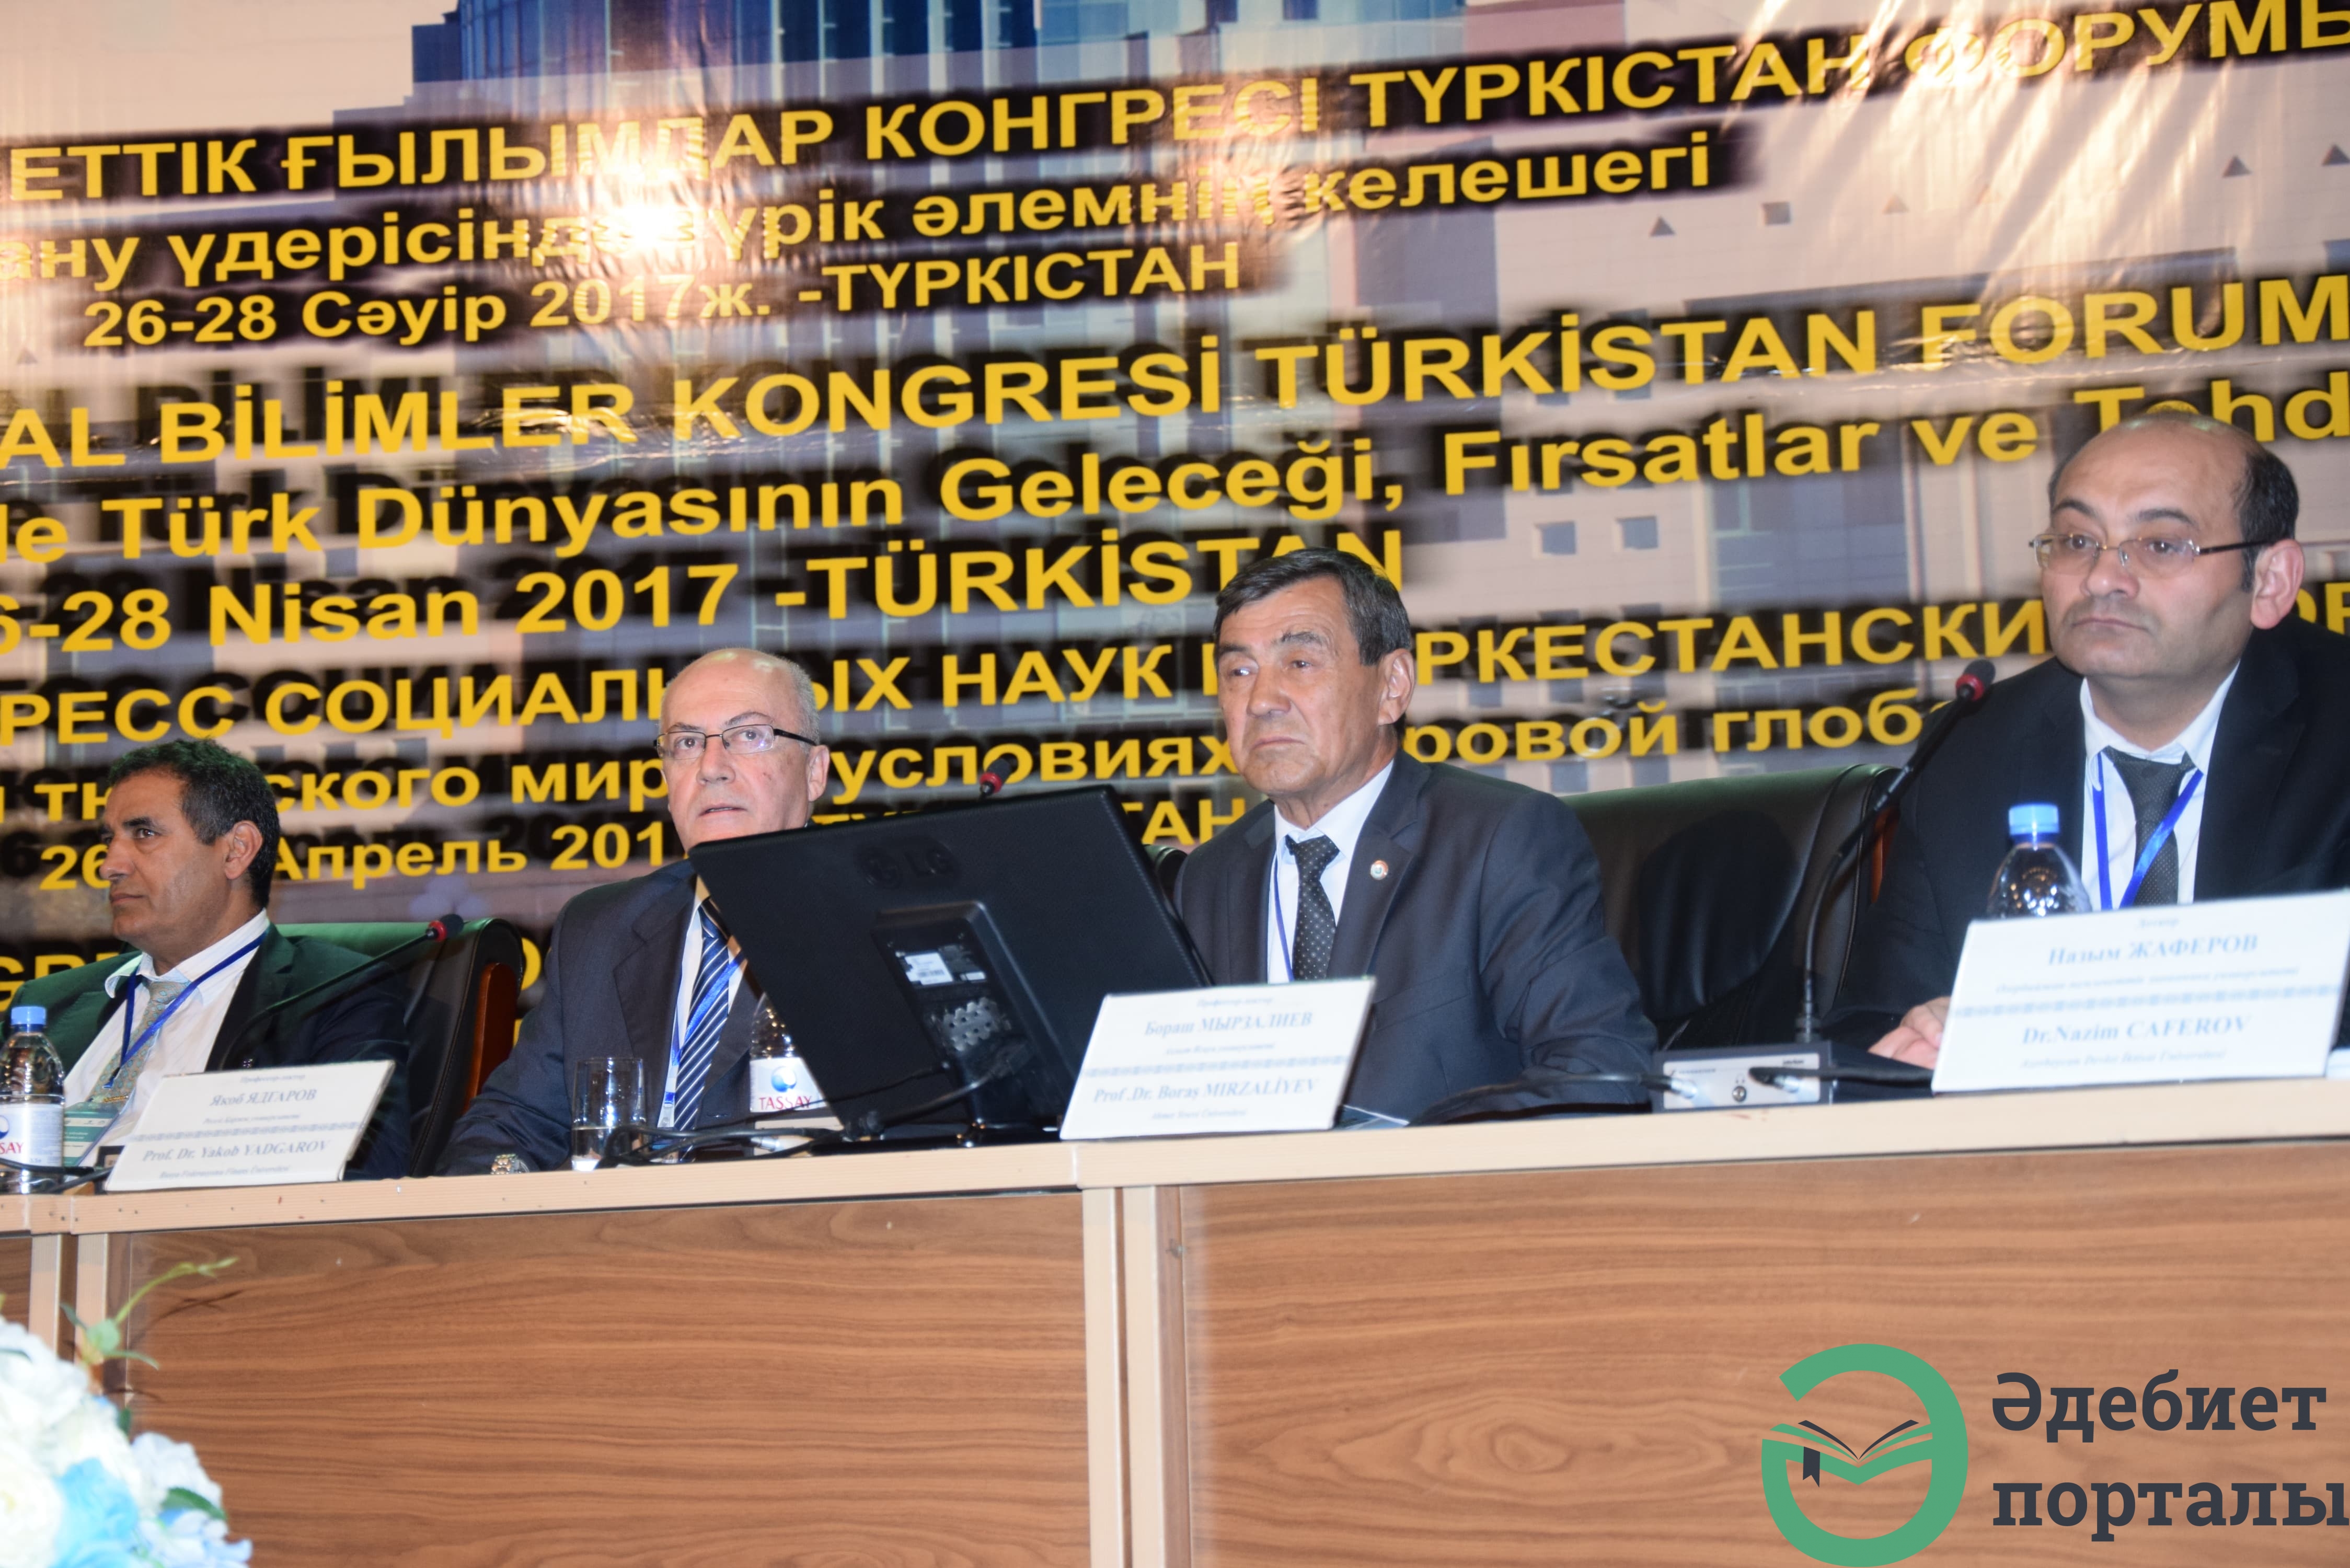 Халықаралық әлеуметтік ғылымдар конгресі: ІІІ Түркістан форумы  - фото 65 - adebiportal.kz